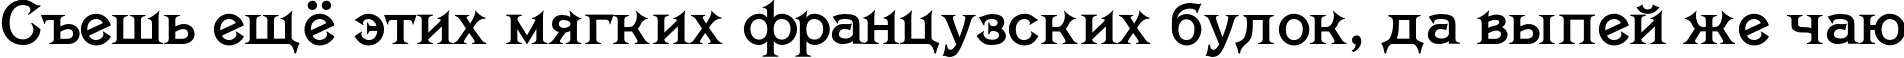 Пример написания шрифтом Savin TYGRA текста на русском